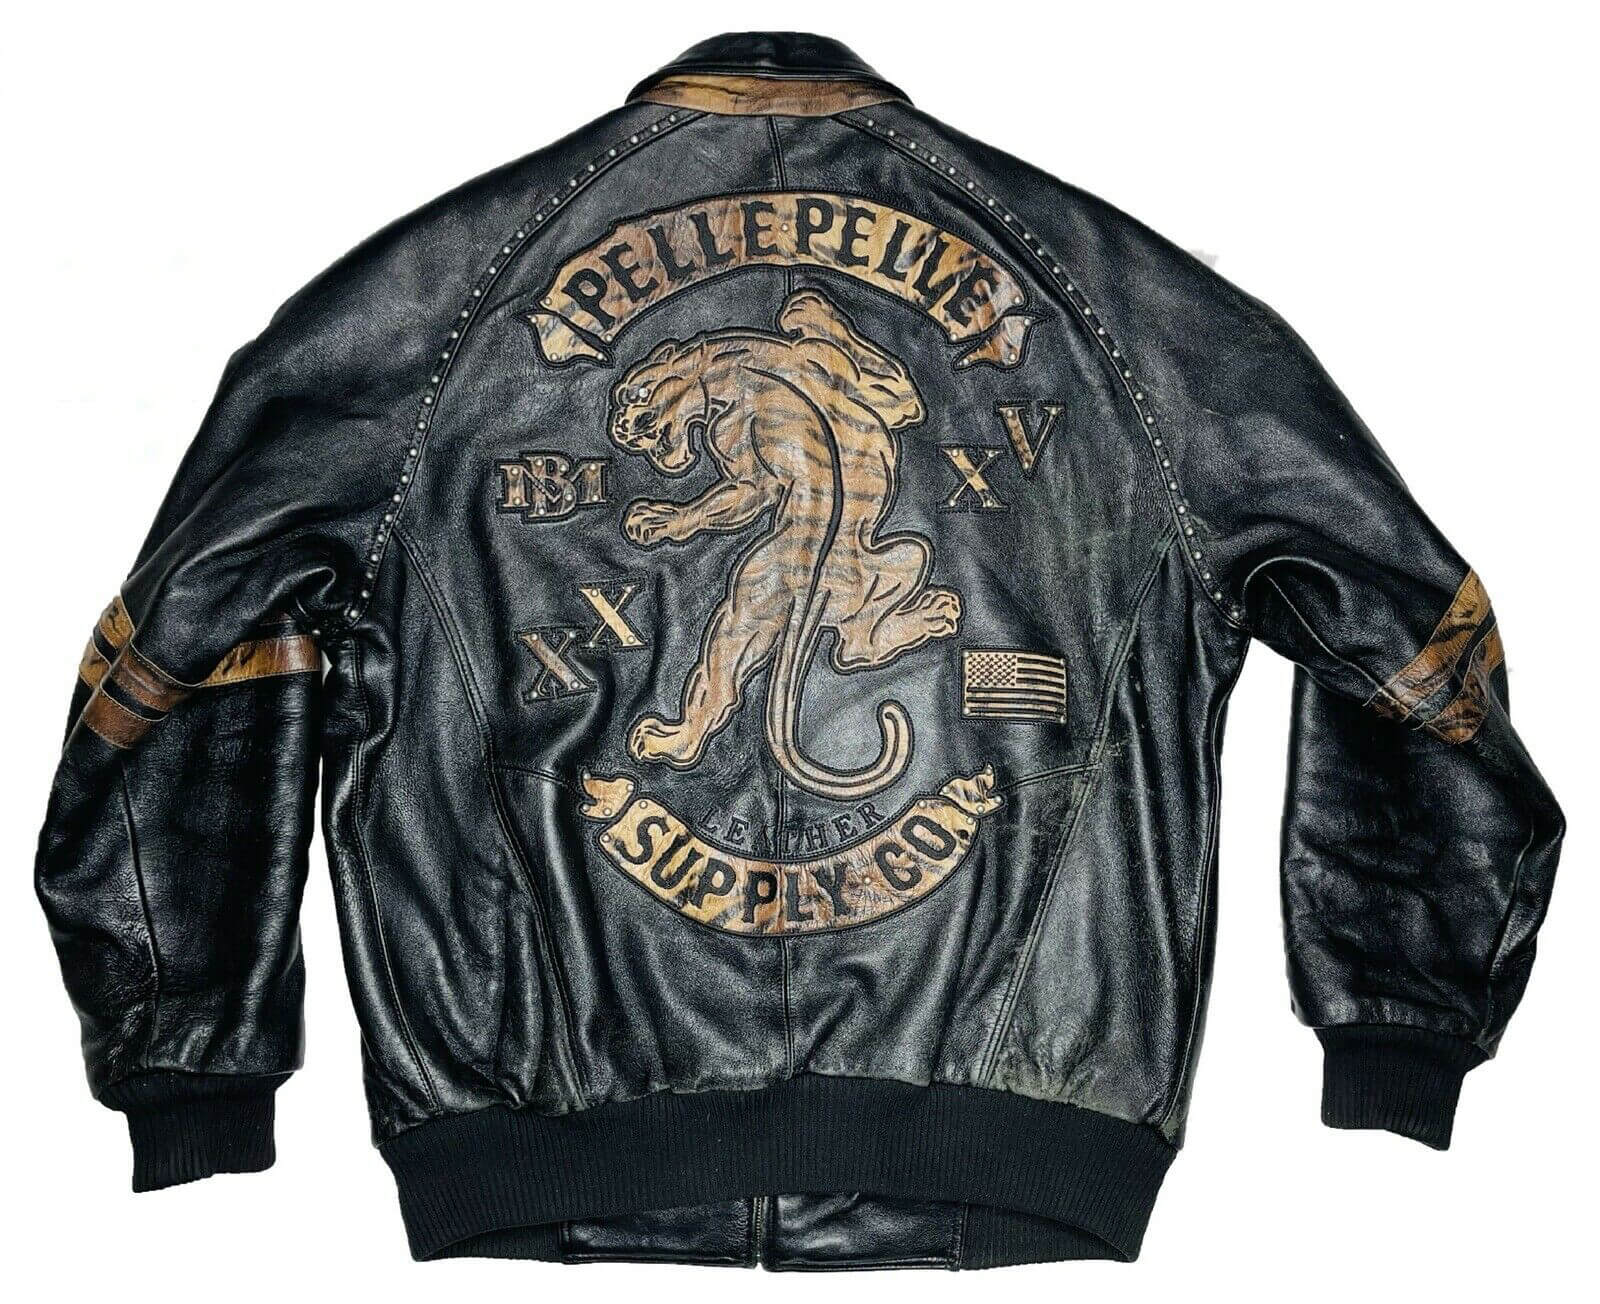 Maker of Jacket Black Leather Jackets Pelle Tiger